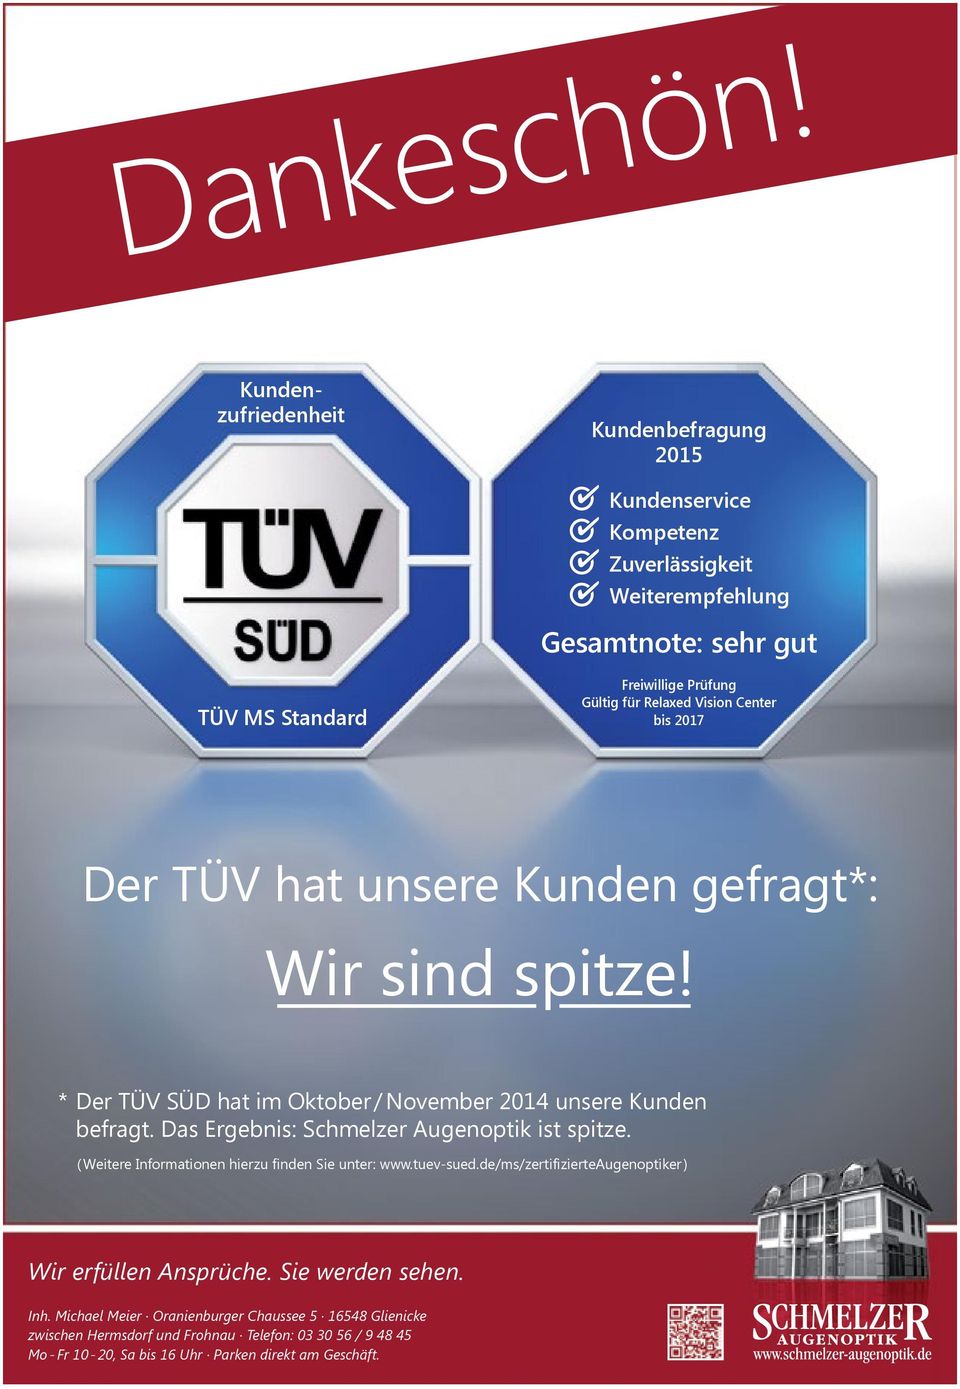 Relaxed Vision Center bis 2017 Der TÜV hat unsere Kunden gefragt*: Wir sind spitze! * Der TÜV SÜD hat im Oktober/November 2014 unsere Kunden befragt.